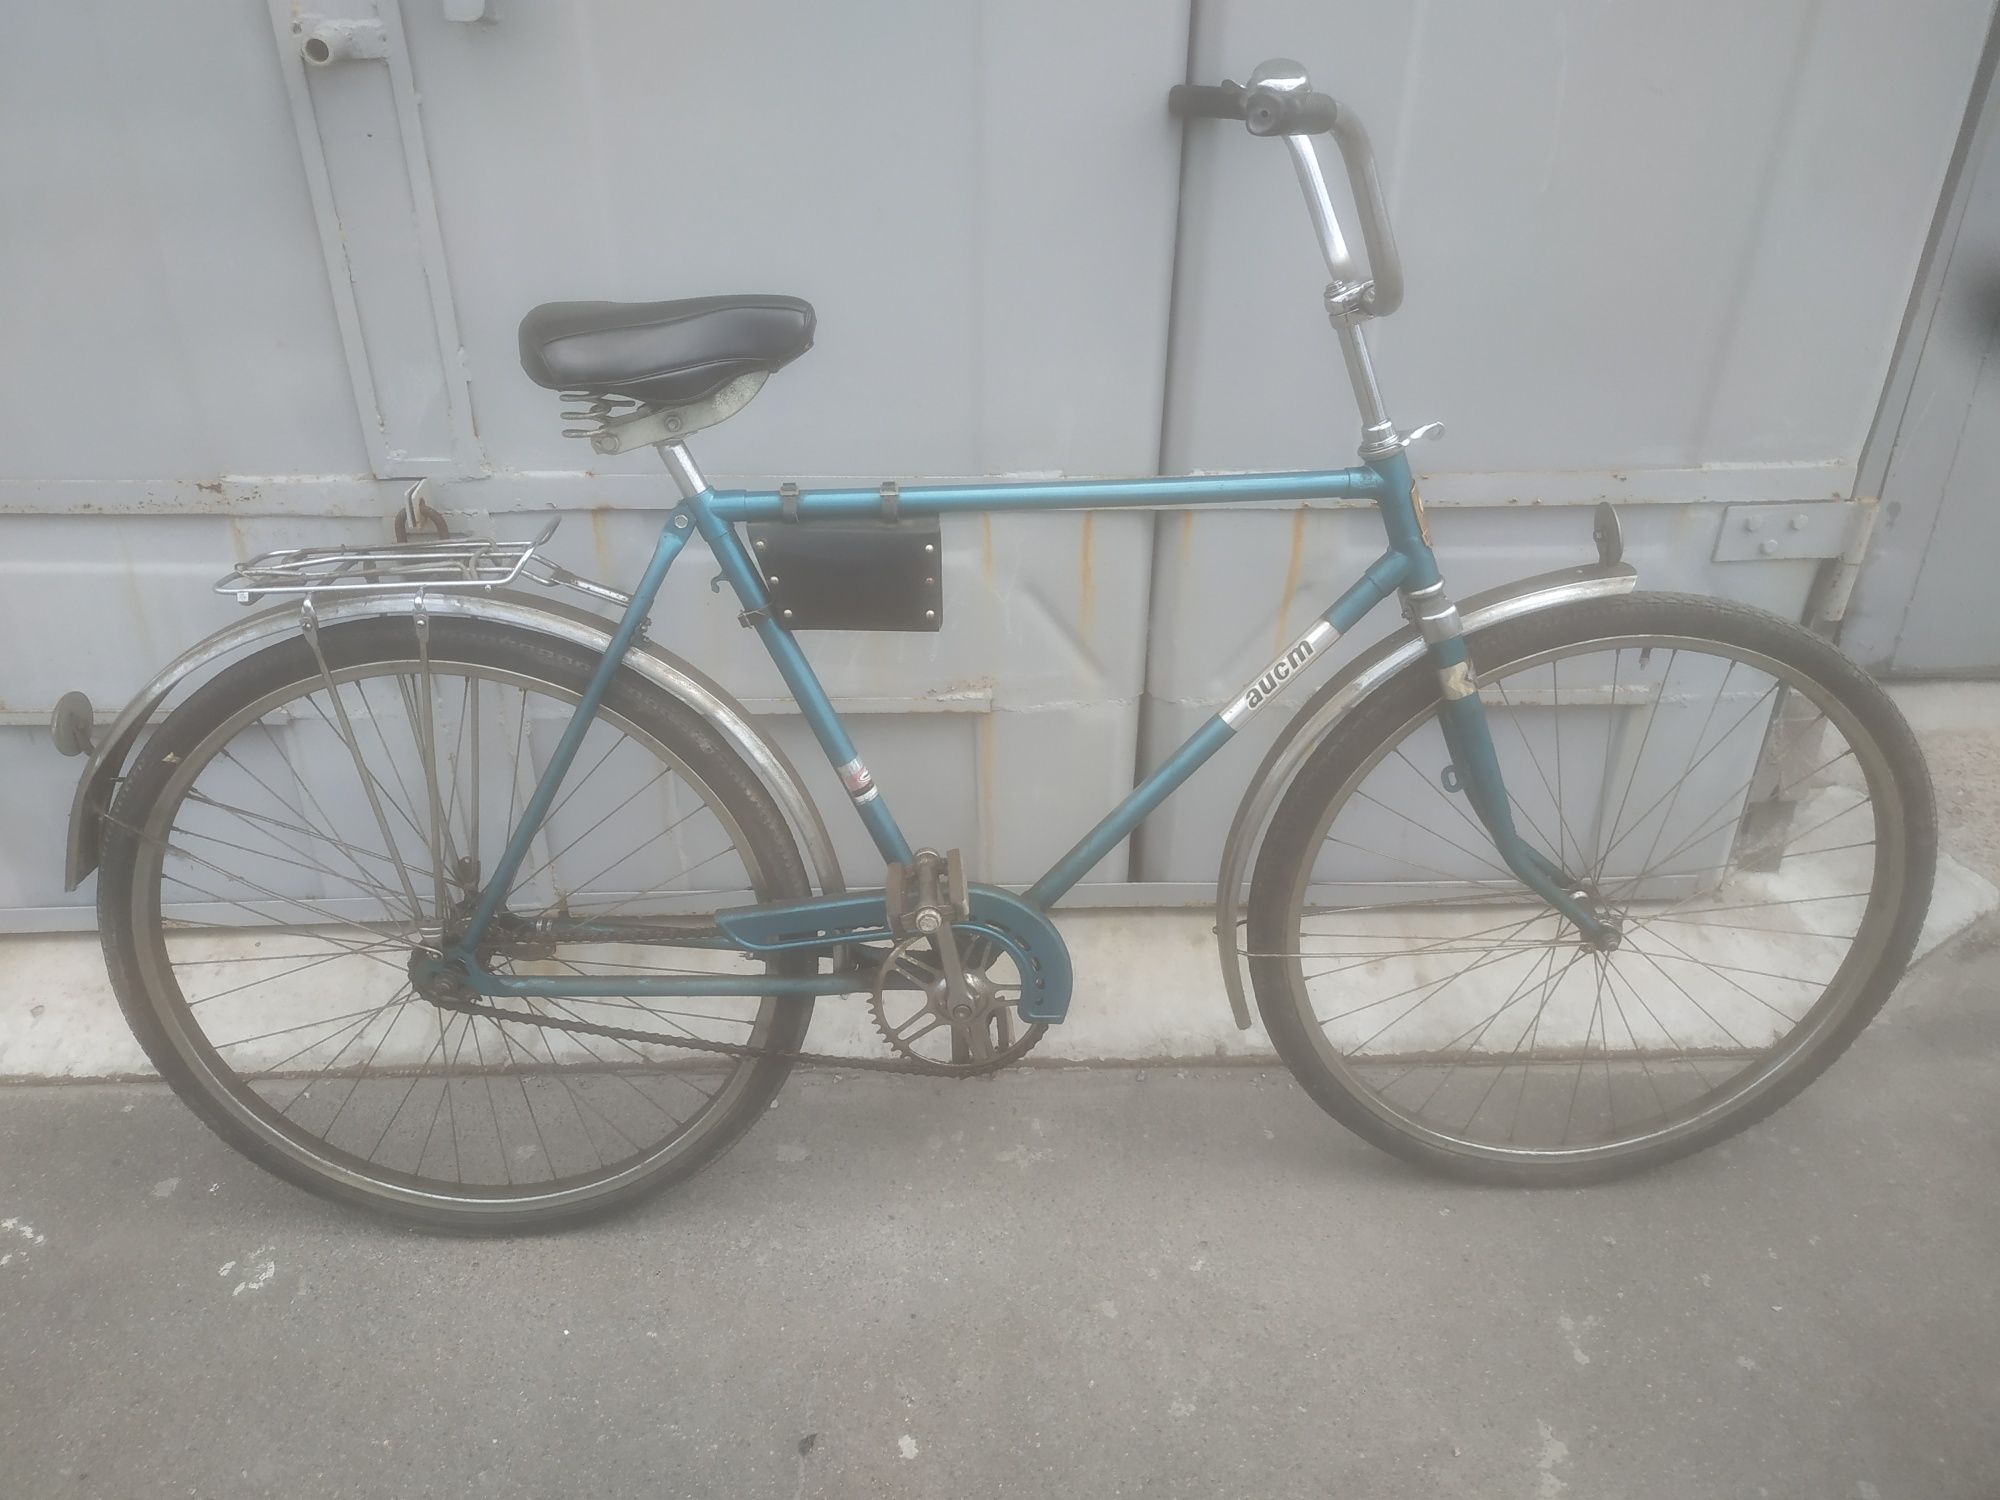 Оригинальный новый велосипед Минск времён СССР.